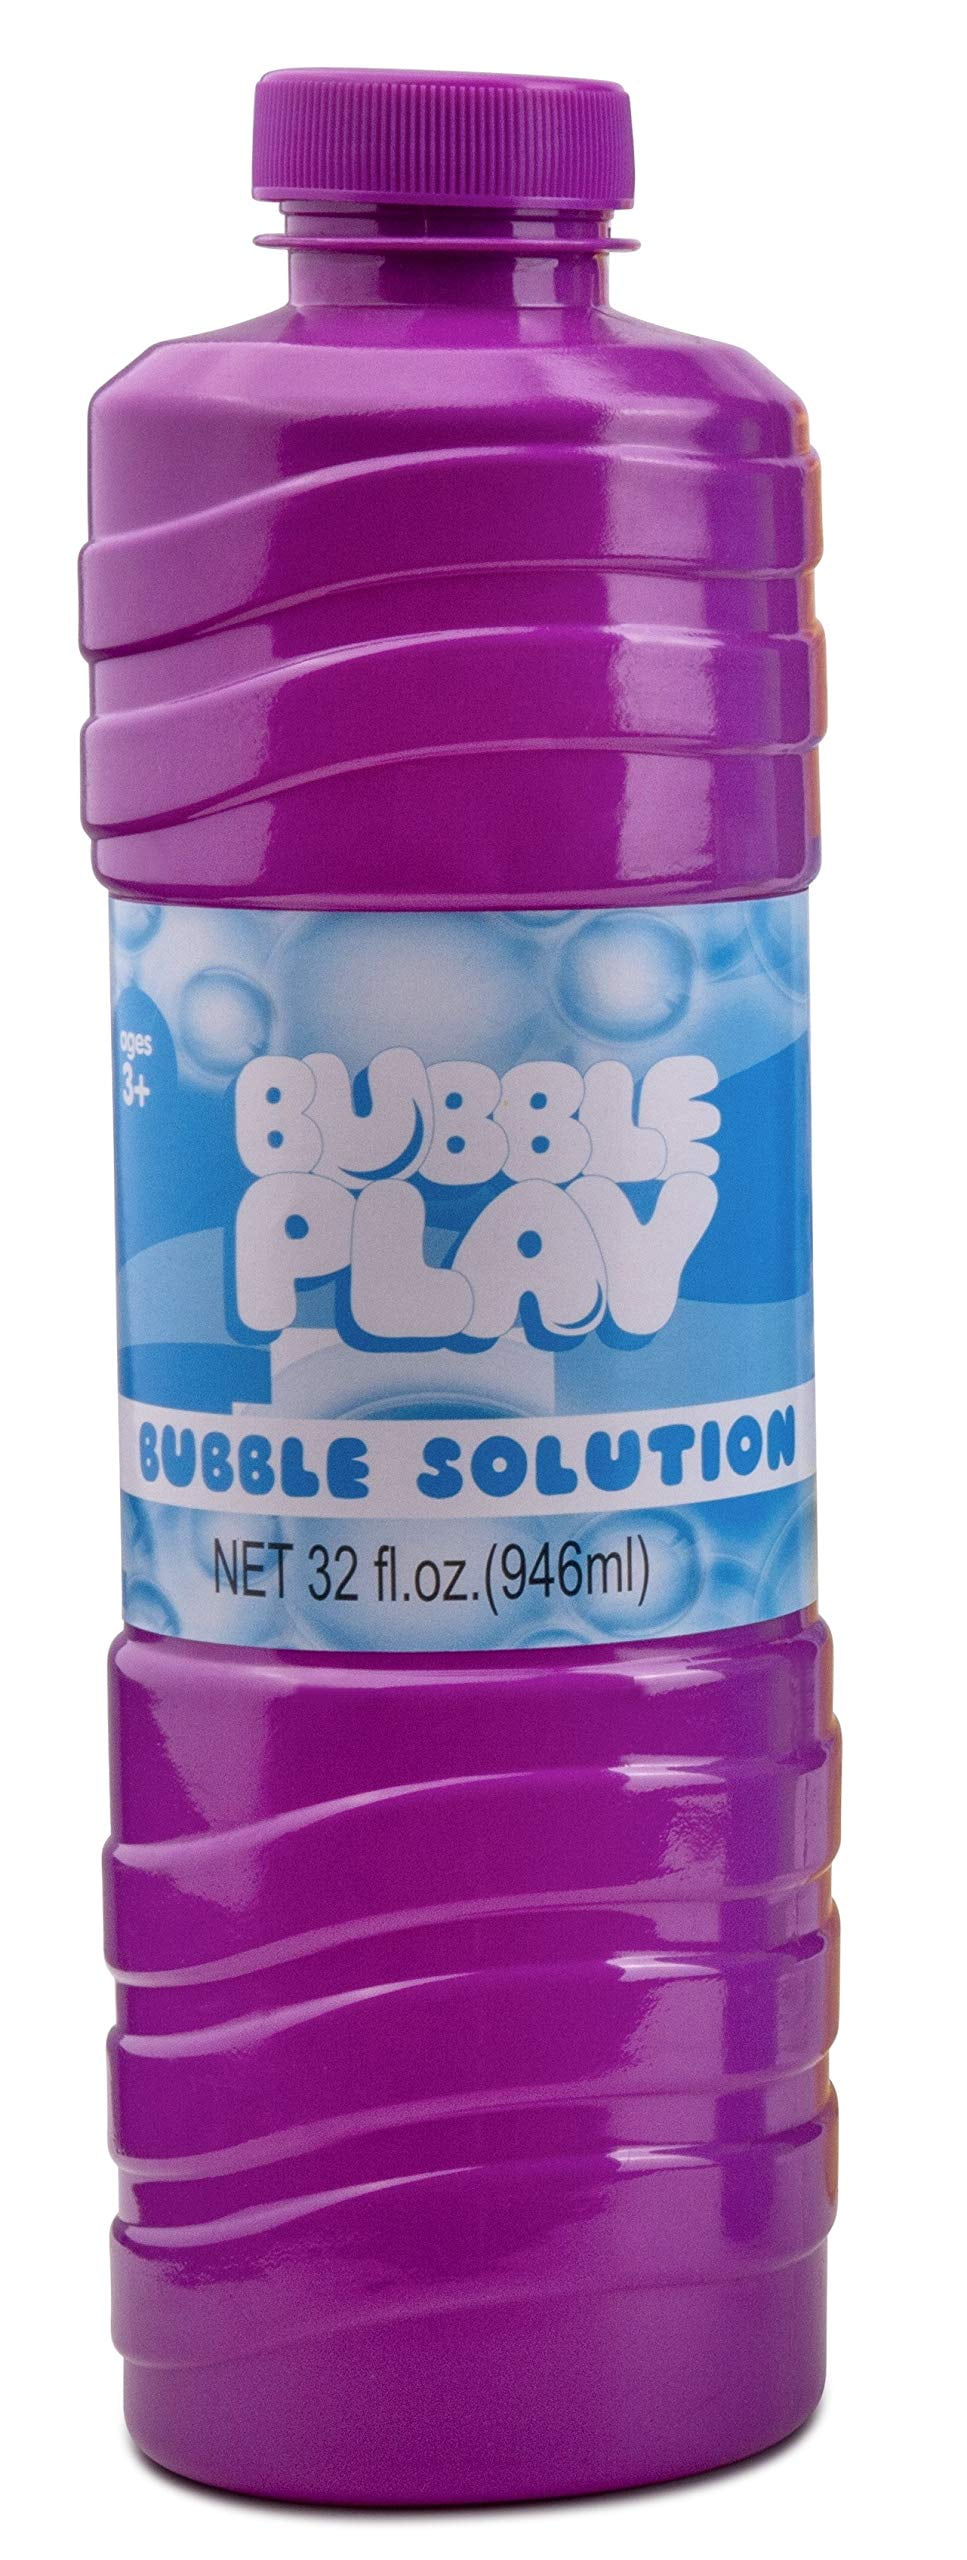 10Pcs Bubble Glue Kids Blowing Bubble Ball Toys for Children Space BalloKH 